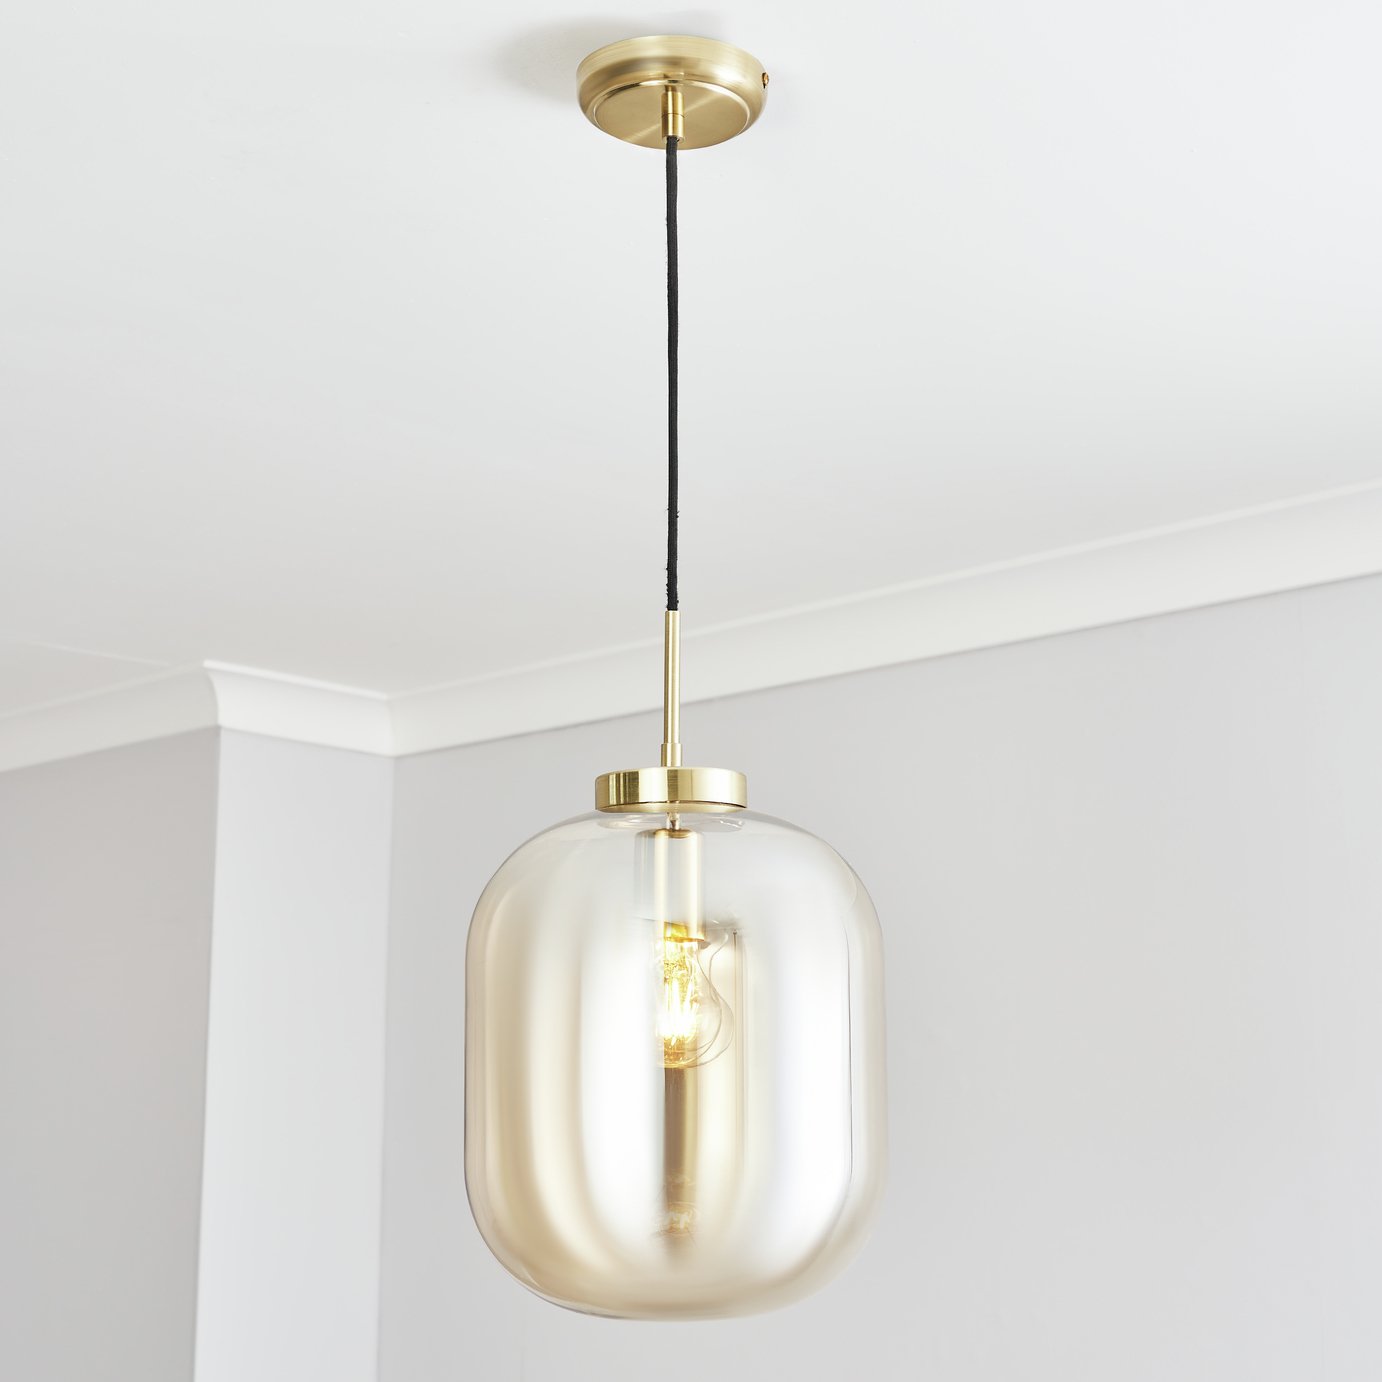 BHS Merriam Glass Pendant Ceiling Light - Brass